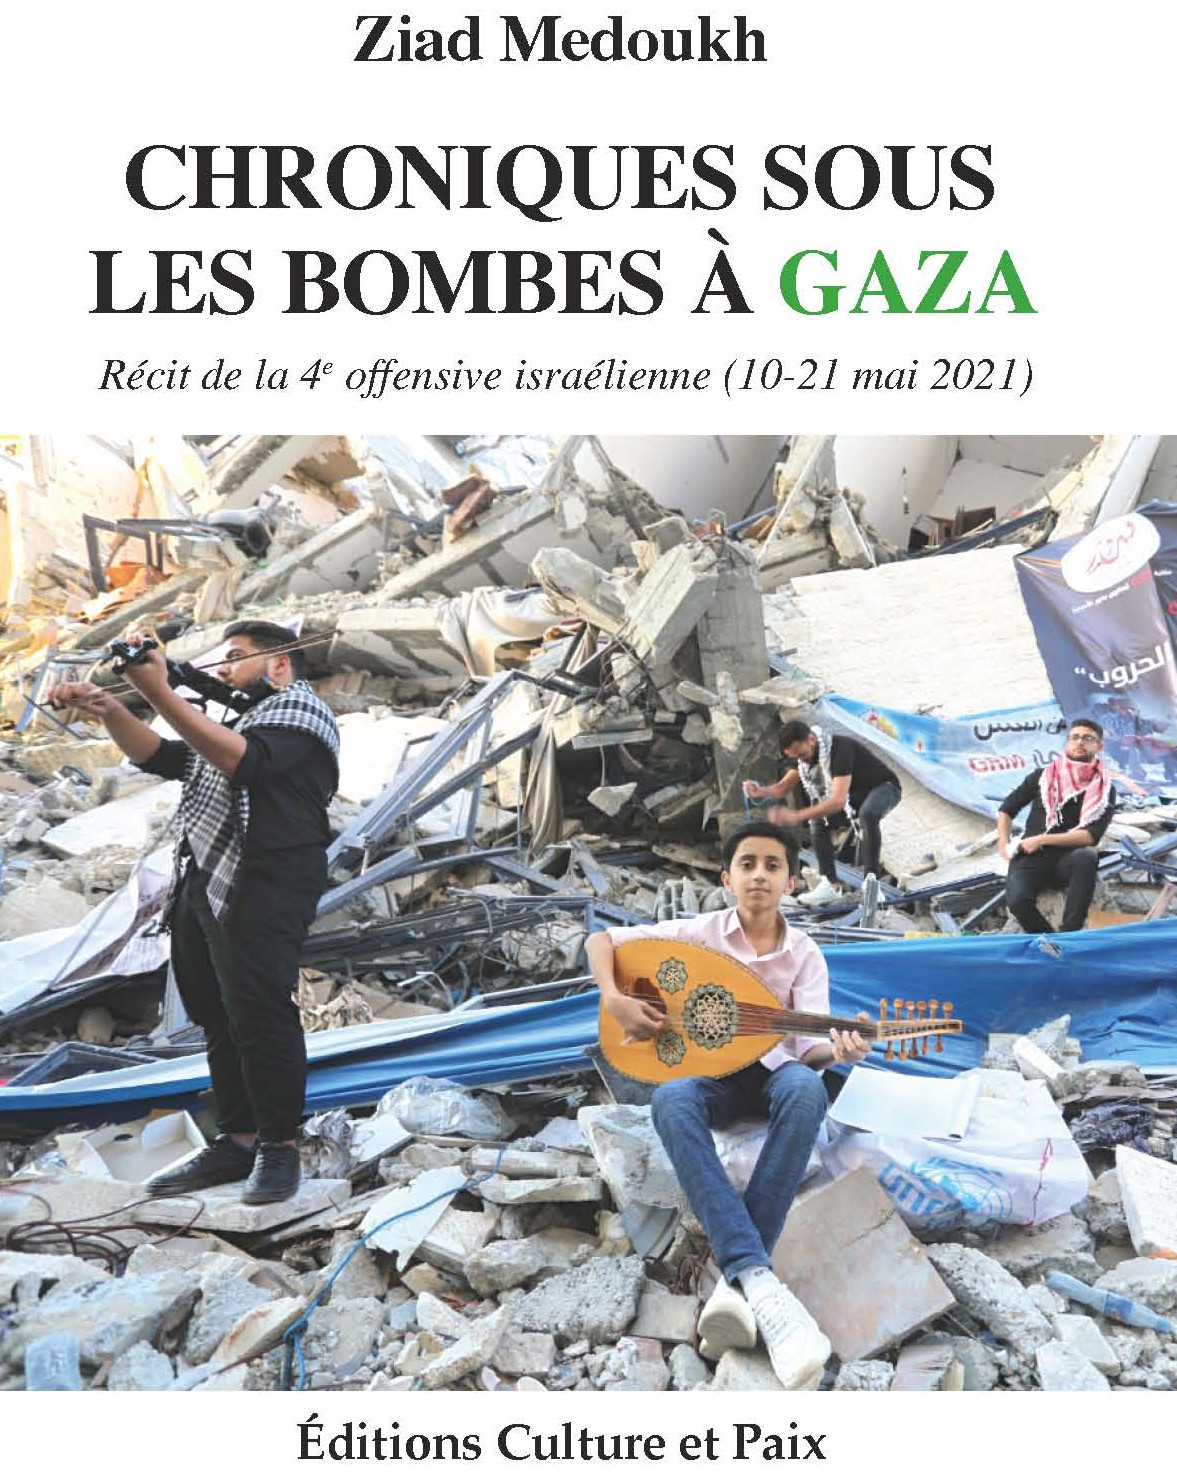 Couverture du livre sur Gaza